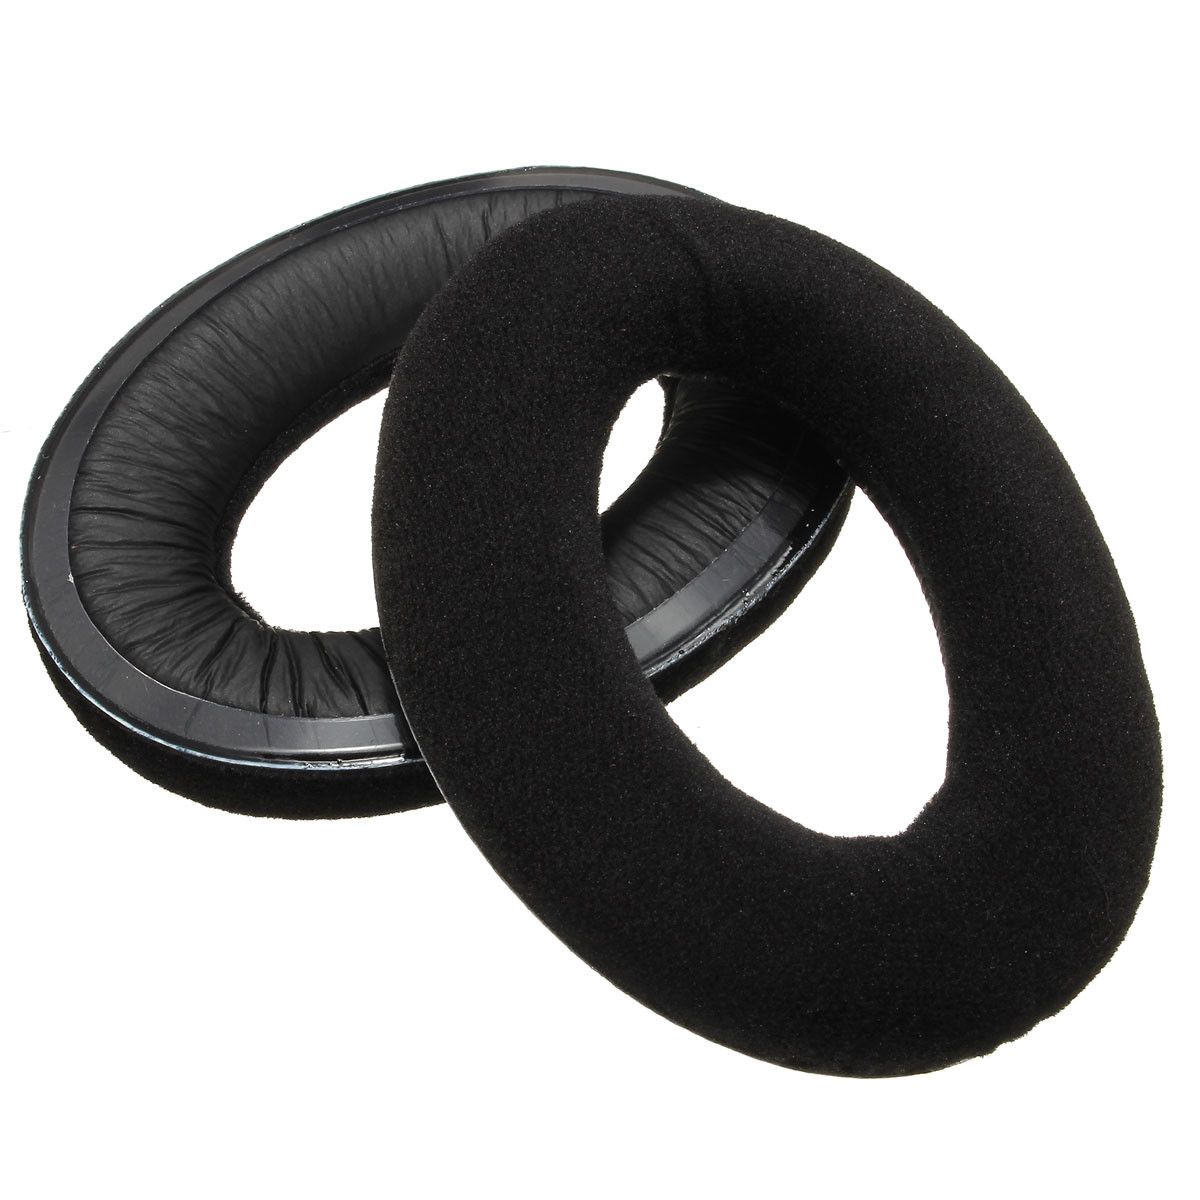 Soft-Foam-Replacement-Ear-Pad-Cup-Cushion-for-Sennheiser-HD515-HD555-HD595-HD518-Headphone-1066516